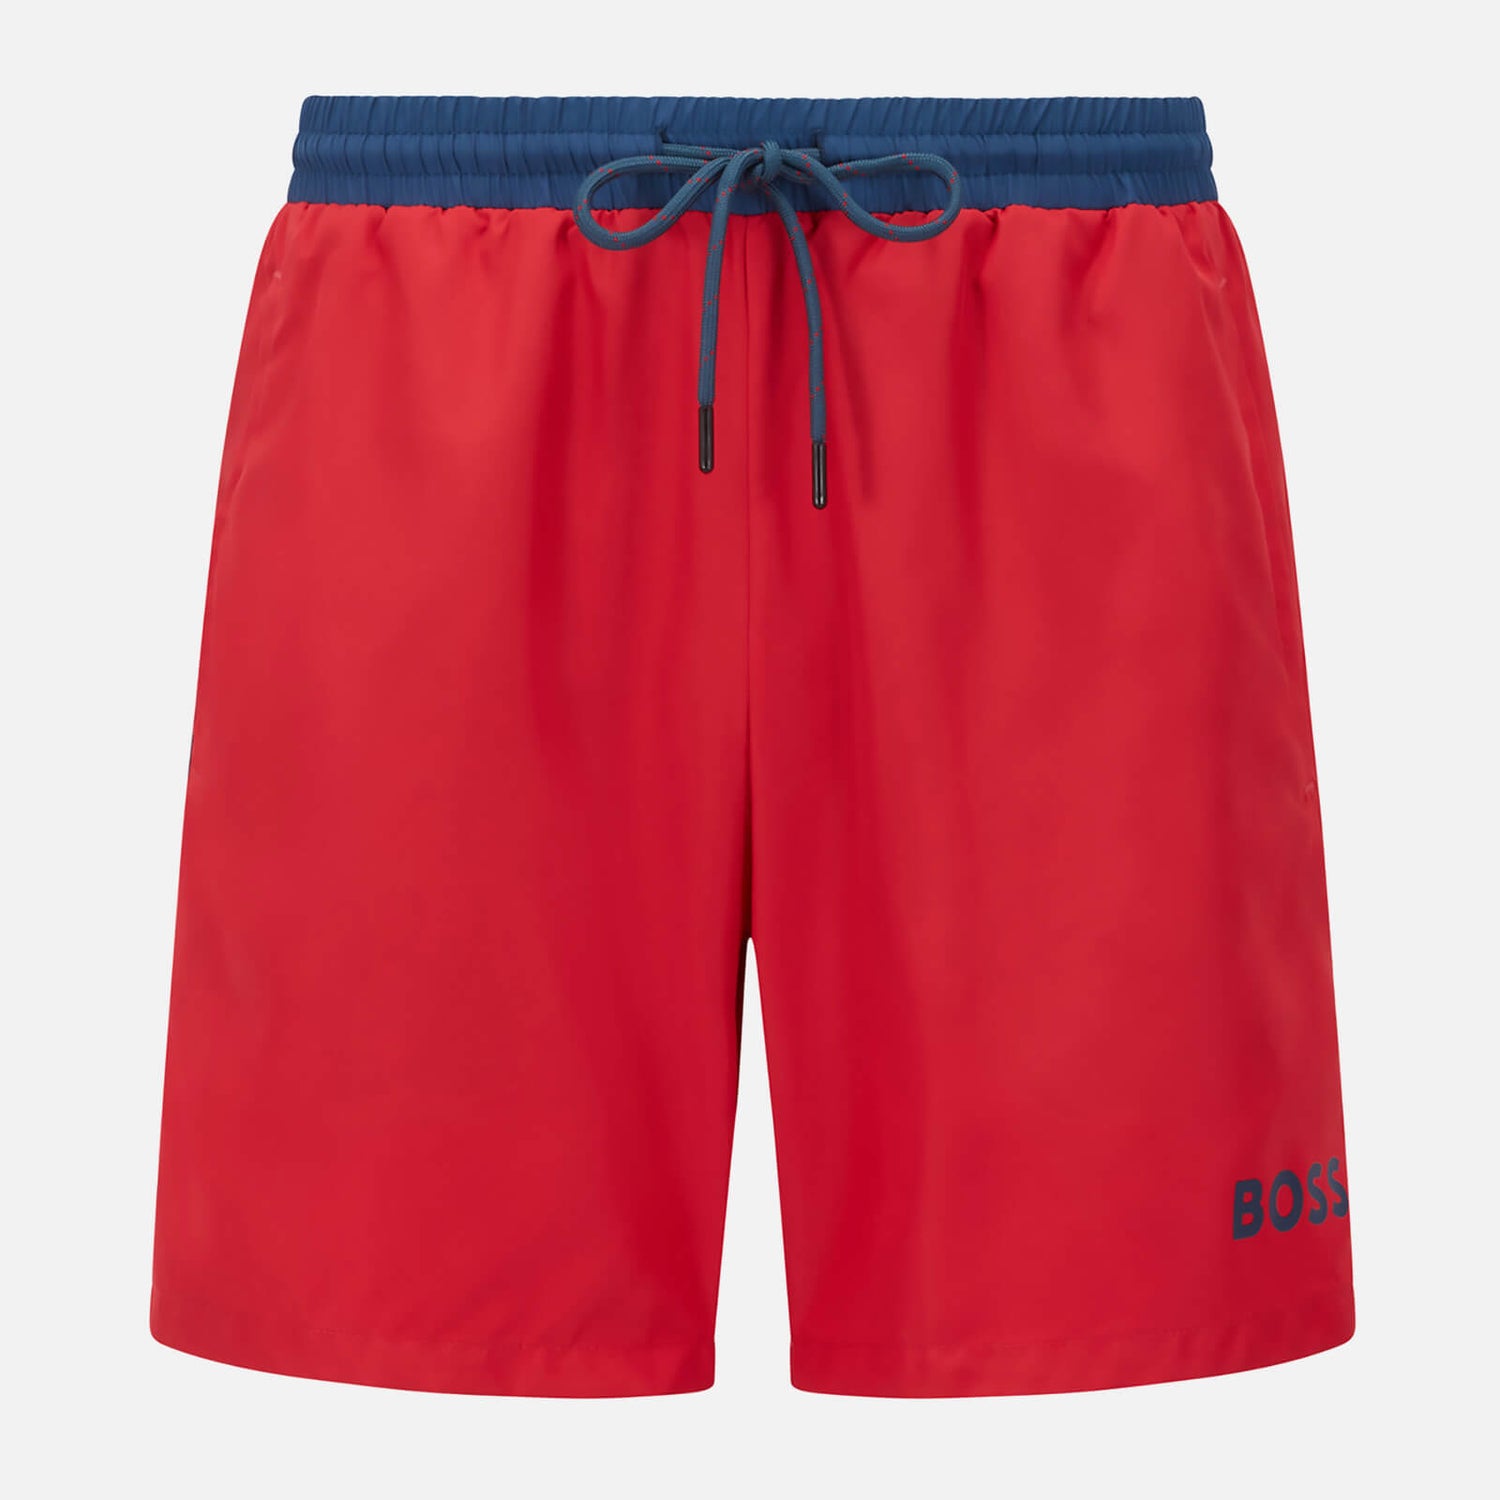 BOSS Bodywear Men's Starfish Swim Shorts - Bright Red - S